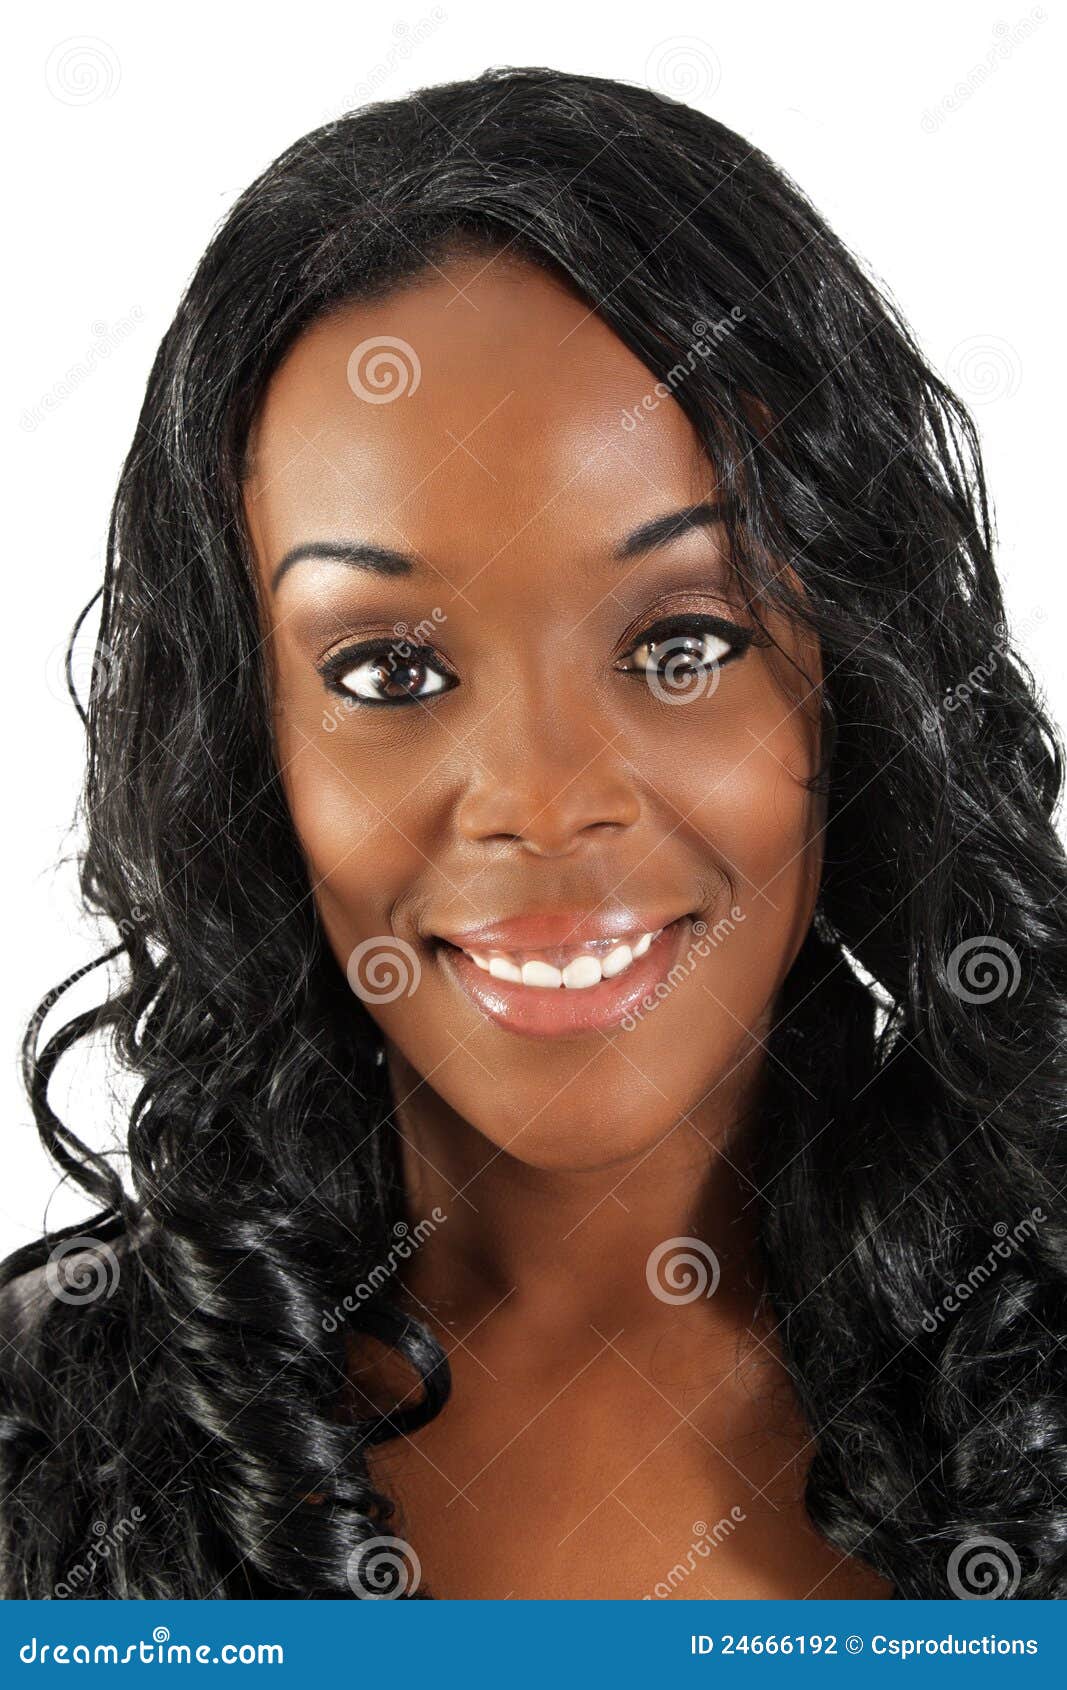 Photos of beautiful black woman